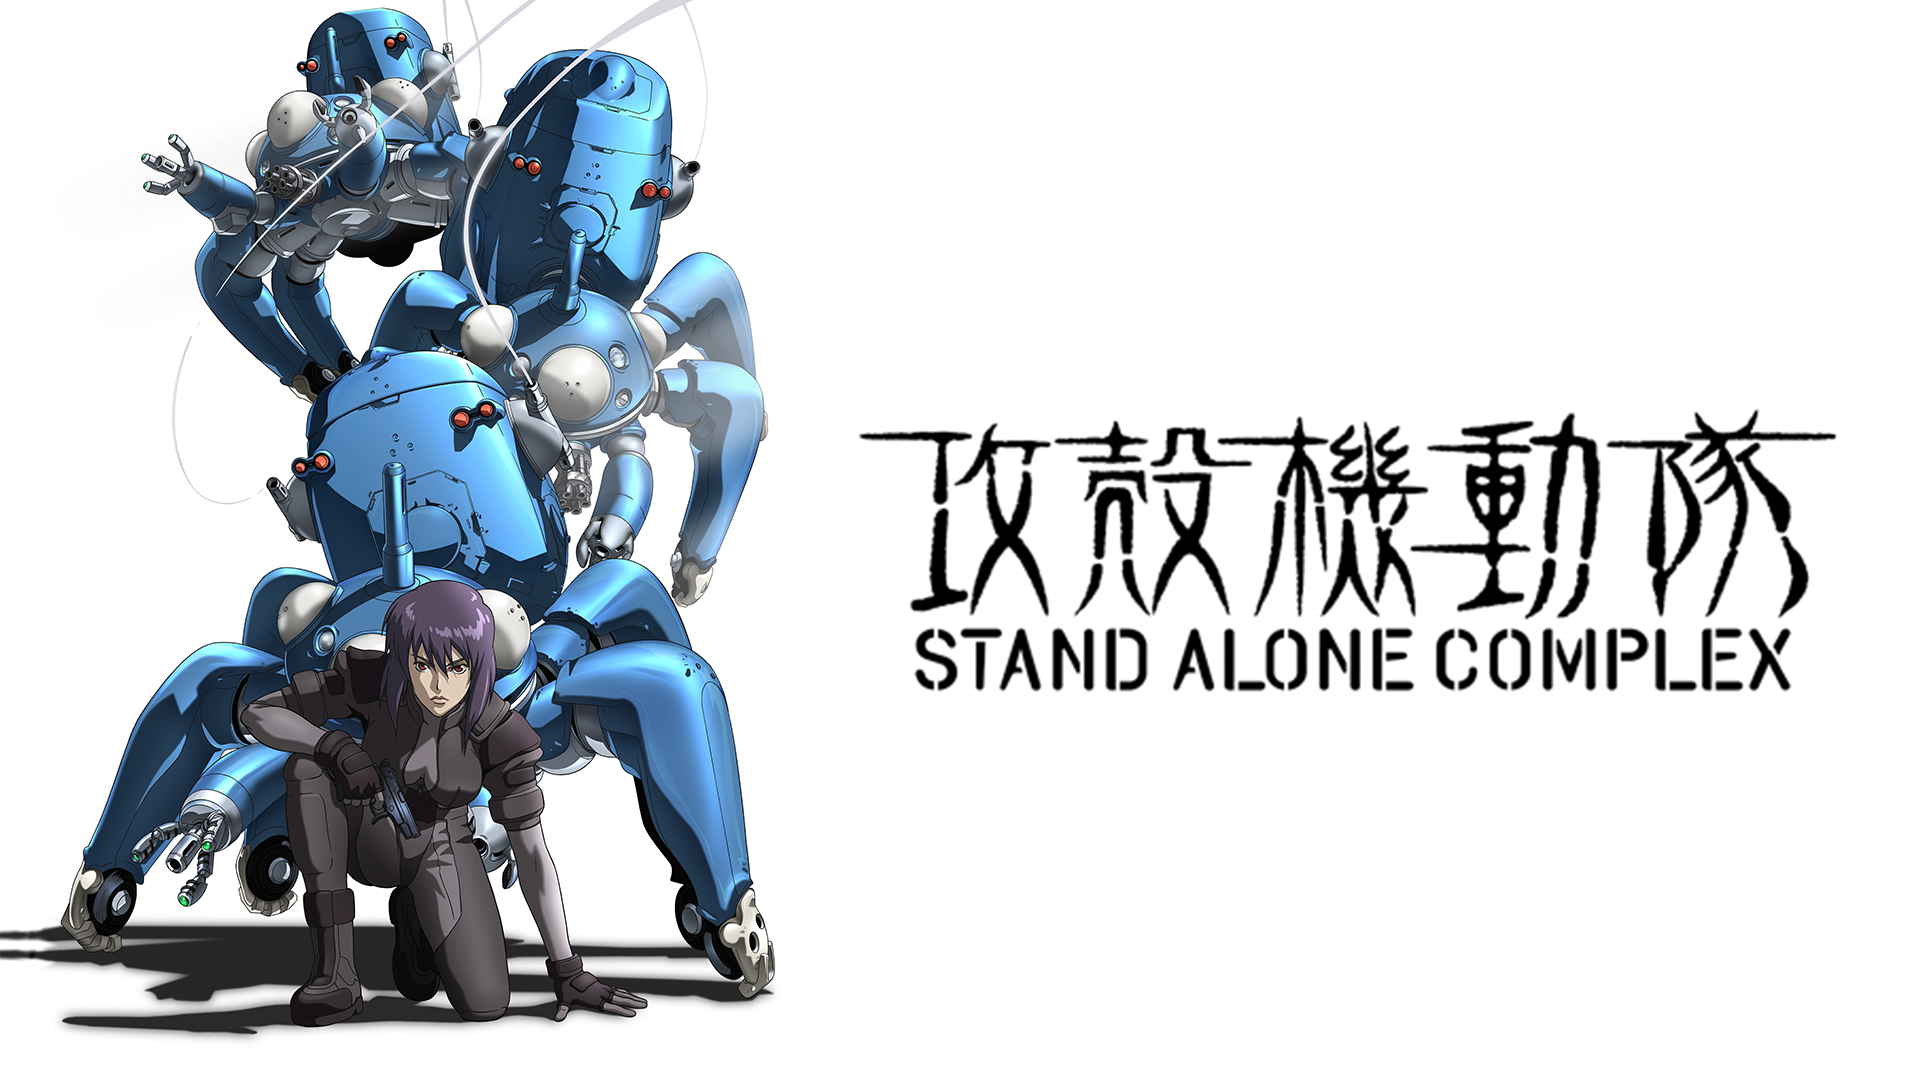 攻殻機動隊 STAND ALONE COMPLEX(アニメ / 2002) - 動画配信 | U-NEXT 